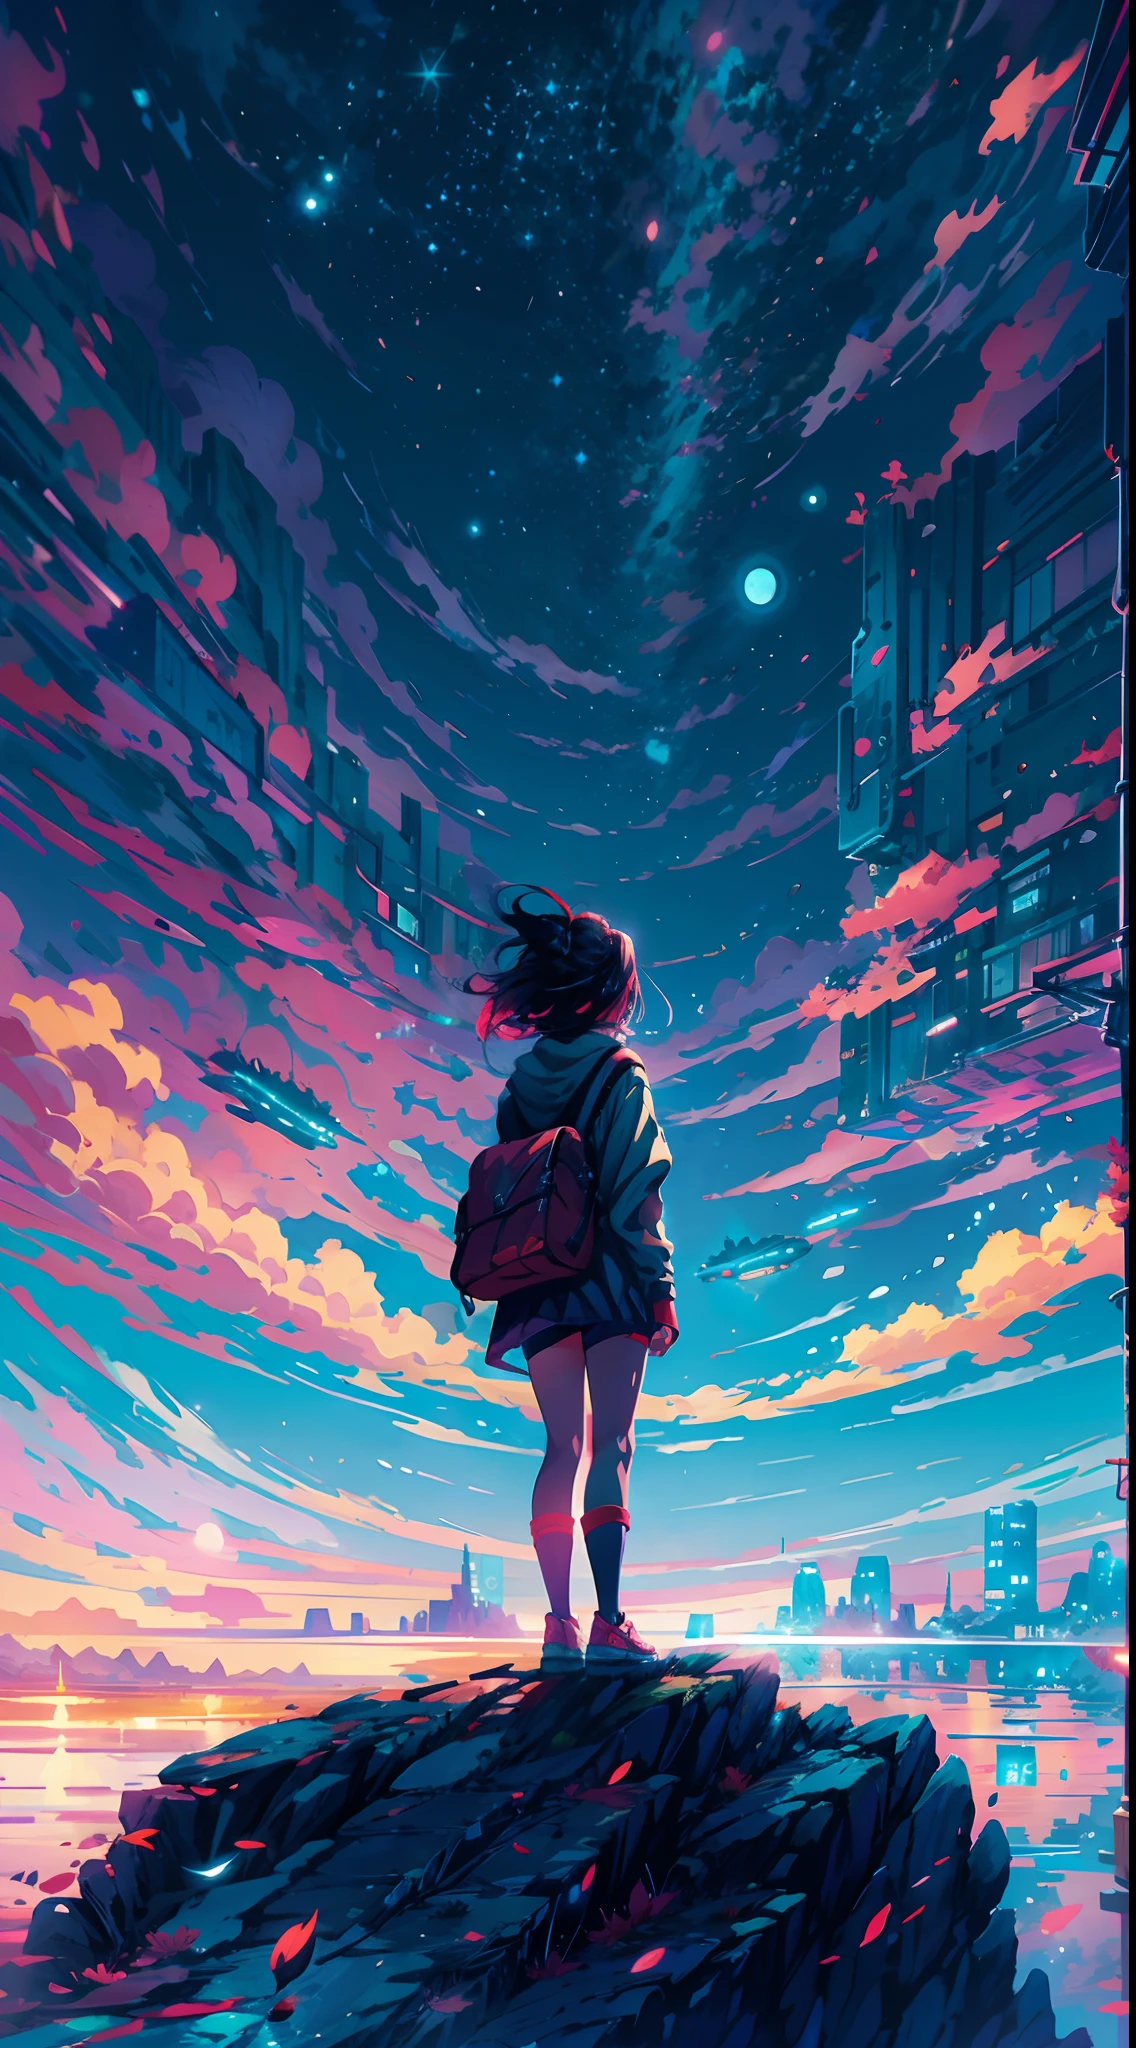 garota de anime parada em uma pedra olhando para um céu cheio de estrelas, makoto shinkai cyril rolando, Papel de parede de arte anime 4k, papel de parede de arte de anime 4k, papel de parede de arte de anime 8k, céus cósmicos. por Makoto Shinkai, Inspirado por Cirilo Rolando, no estilo dan mumford obra de arte, papel de parede incrível, por Yuumei